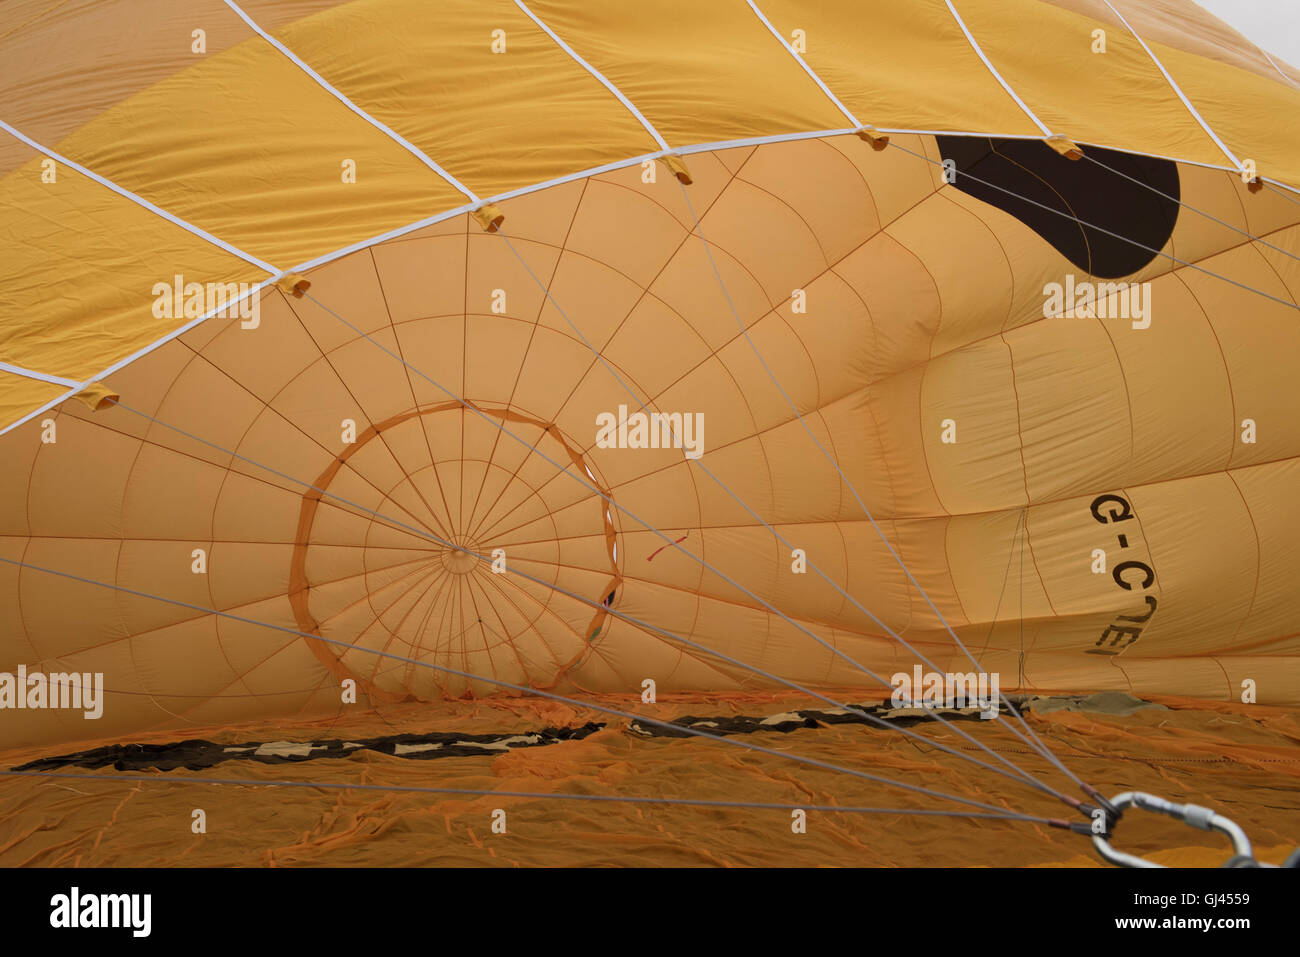 Bristol, Reino Unido. 12 de agosto, 2016. Bristol.La misa matutina del ascenso en el Bristol Balloon Fiesta 2016 cancelado el crédito: beata cosgrove/Alamy Live News Foto de stock